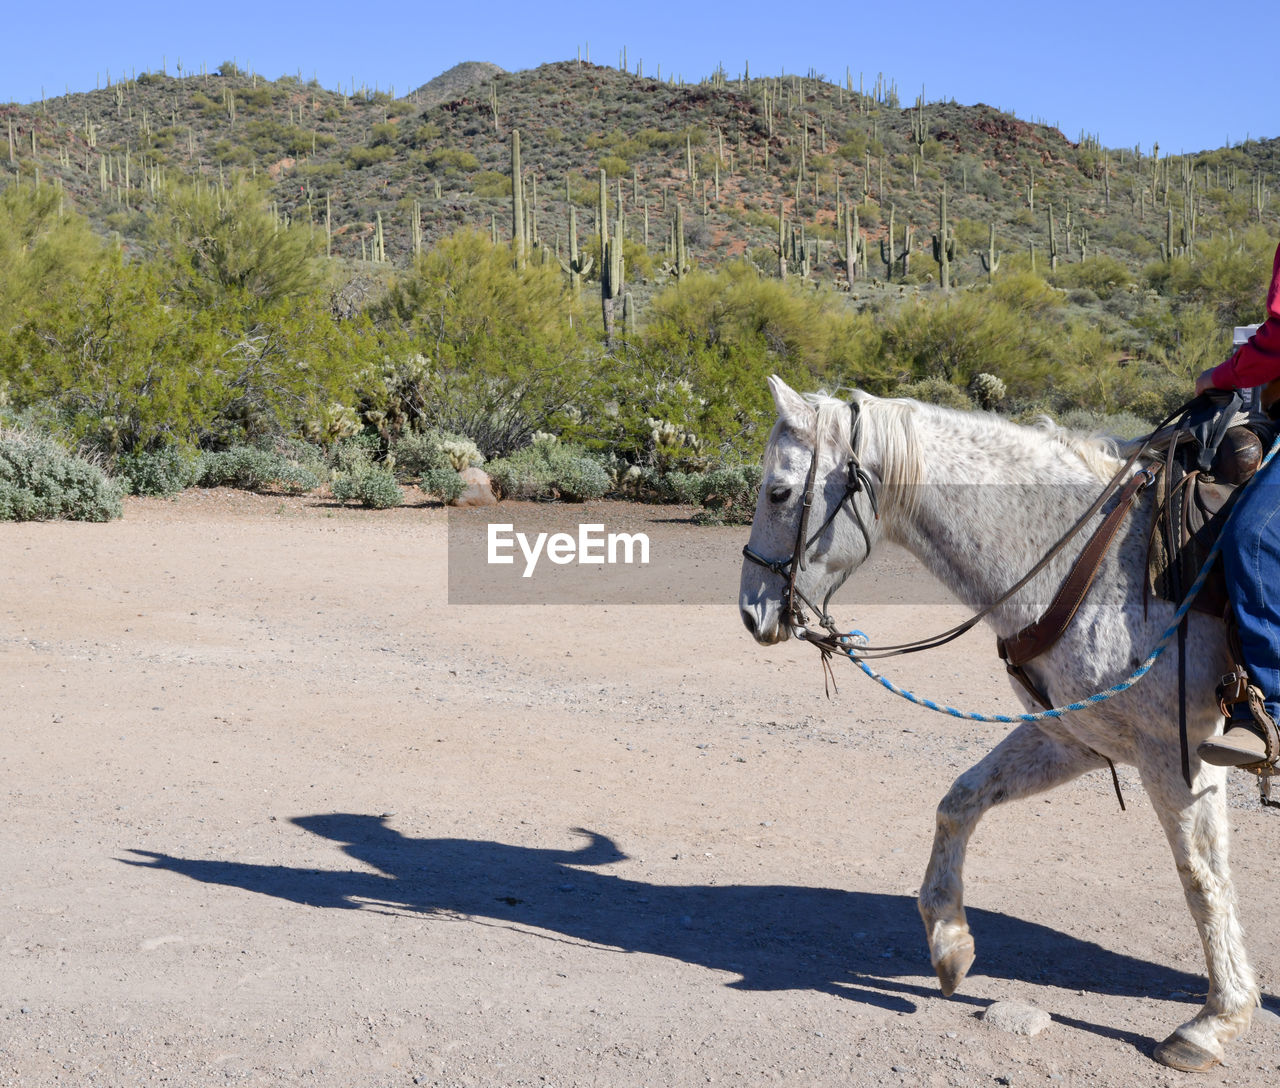 Horseback riding in the desert